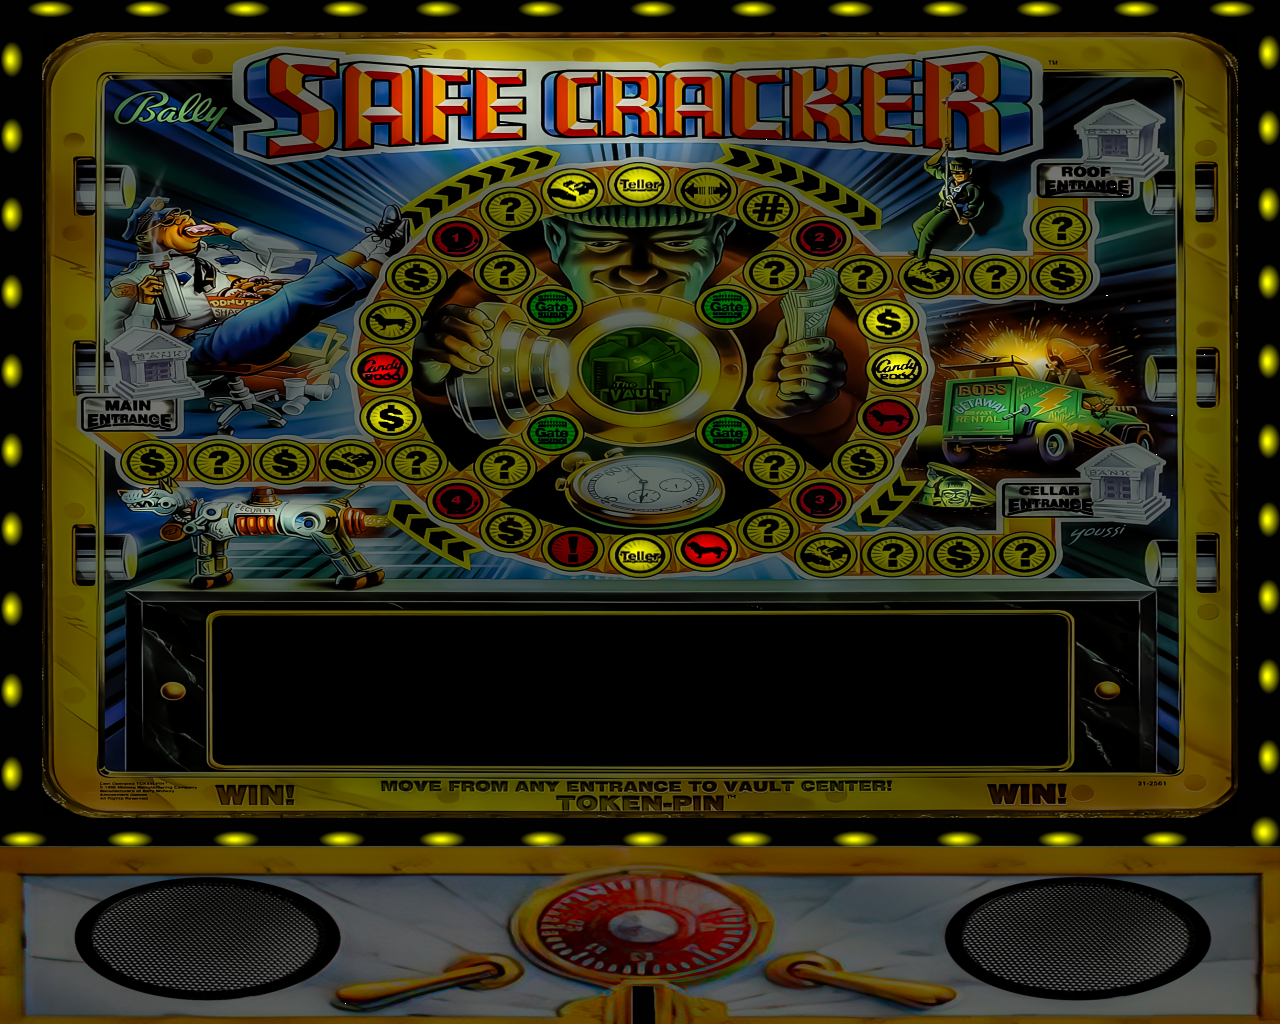 Safe Cracker (Bally 1996)